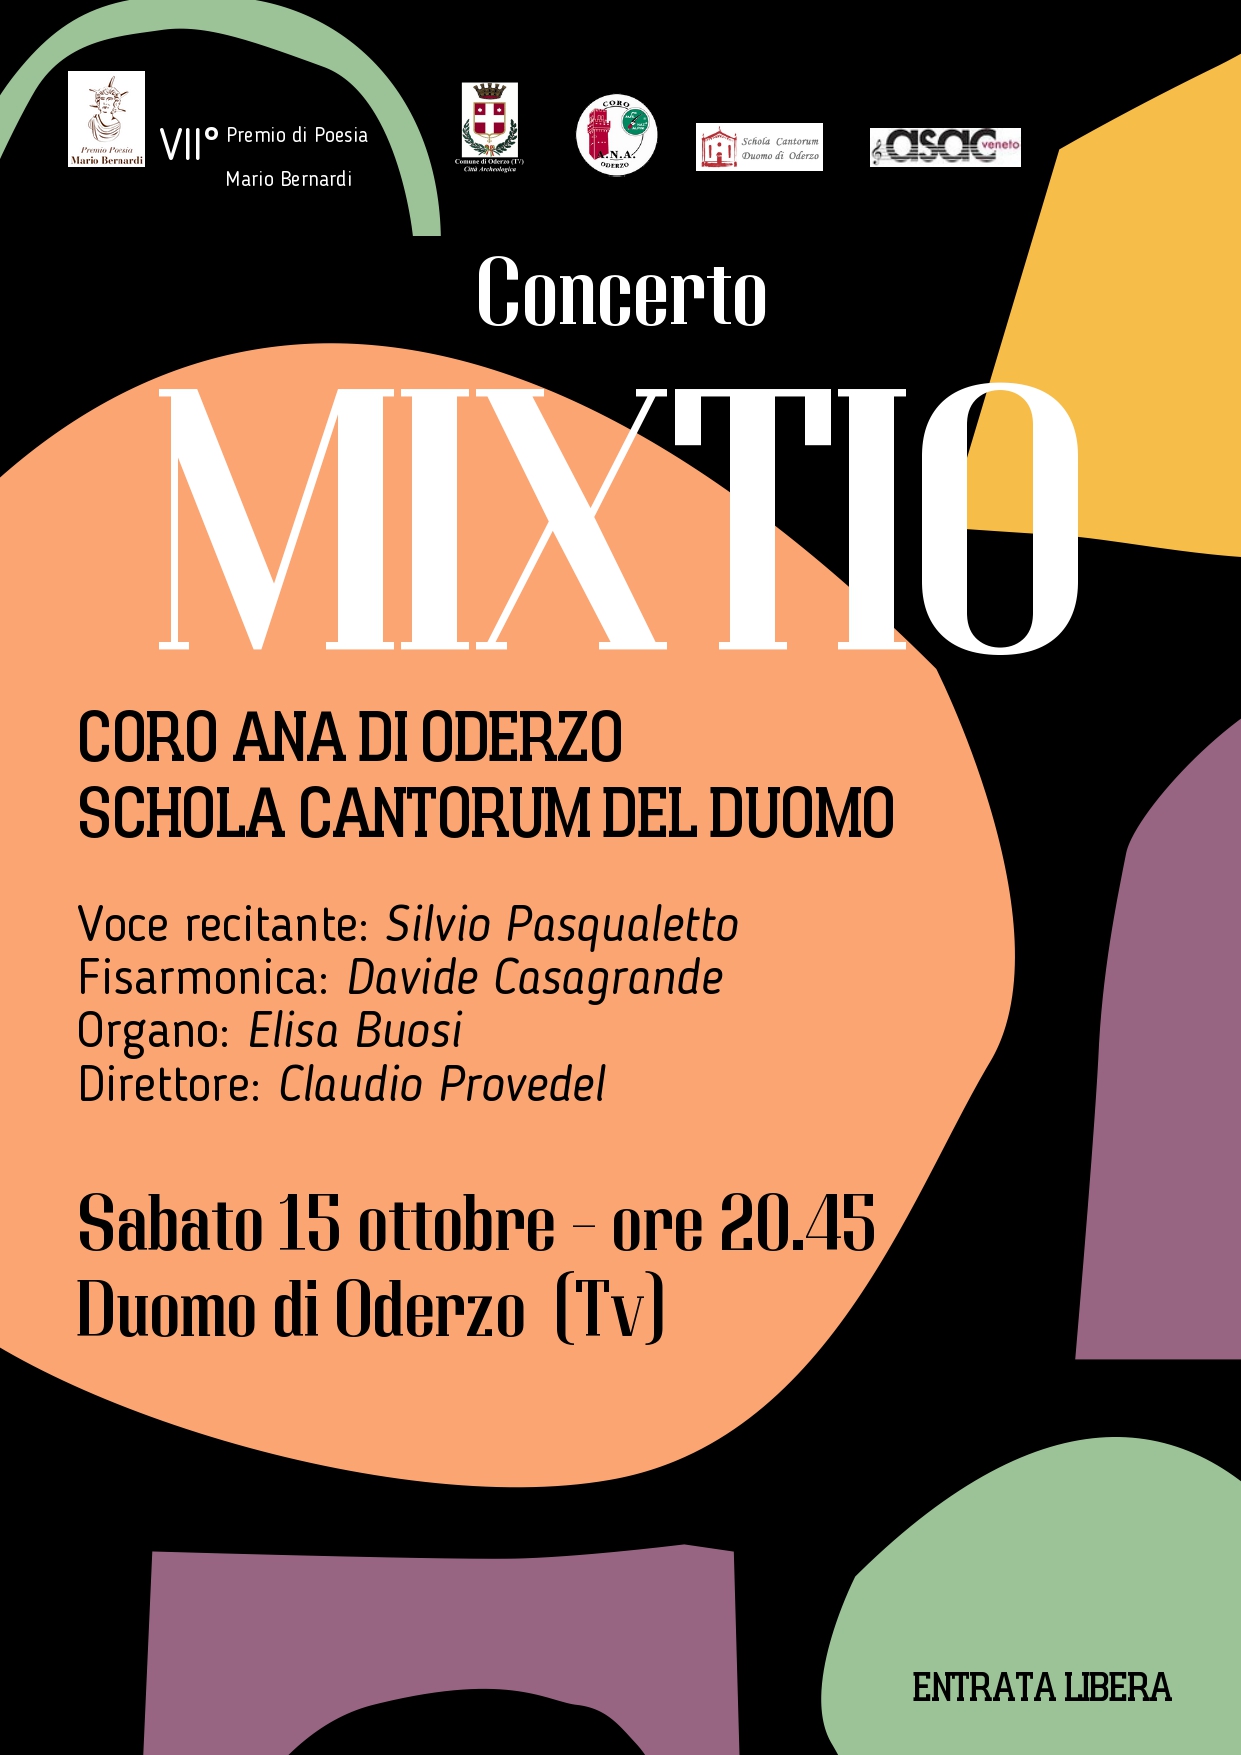 🎵​ Concerto Mixtio 🎵​
In occas...